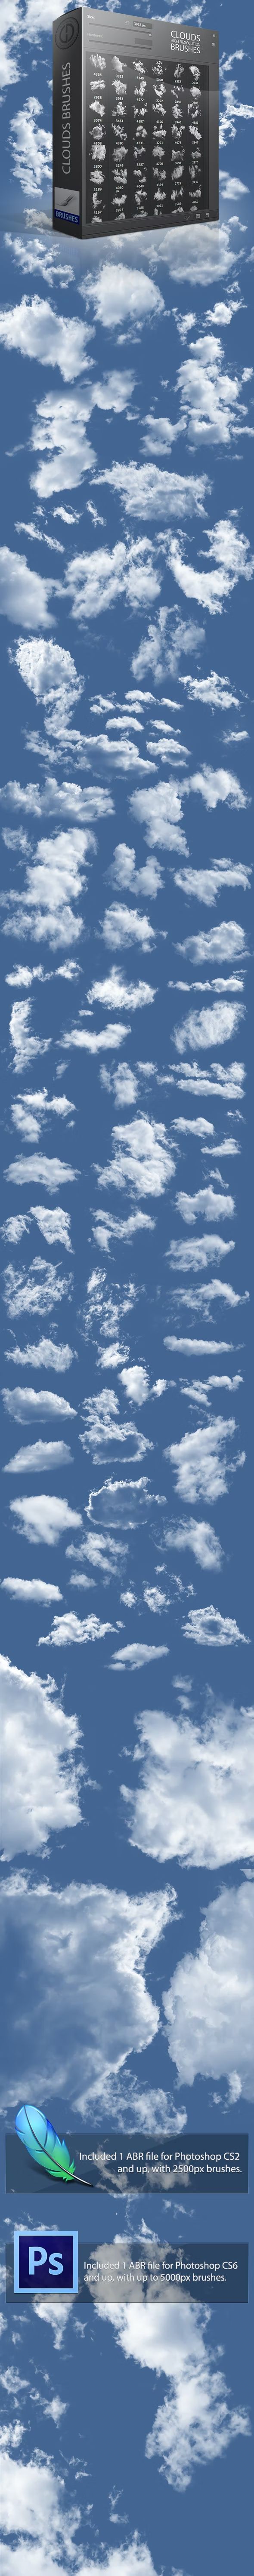 براش ابر فتوشاپ Clouds Brushes 2 - 2